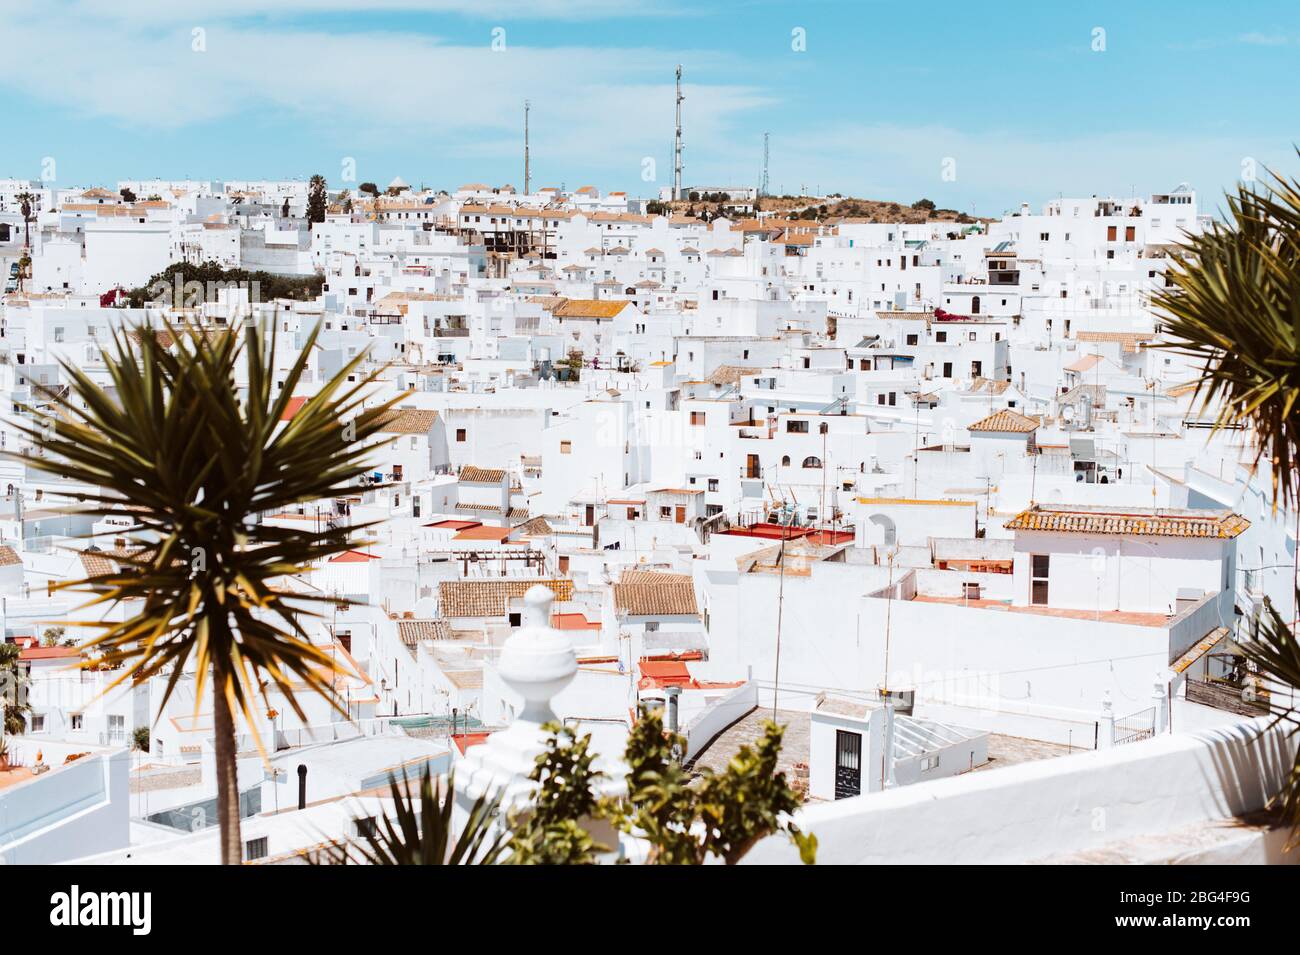 Village blanc contre ciel bleu avec yucca arbres dans le sud de l'Espagne Banque D'Images